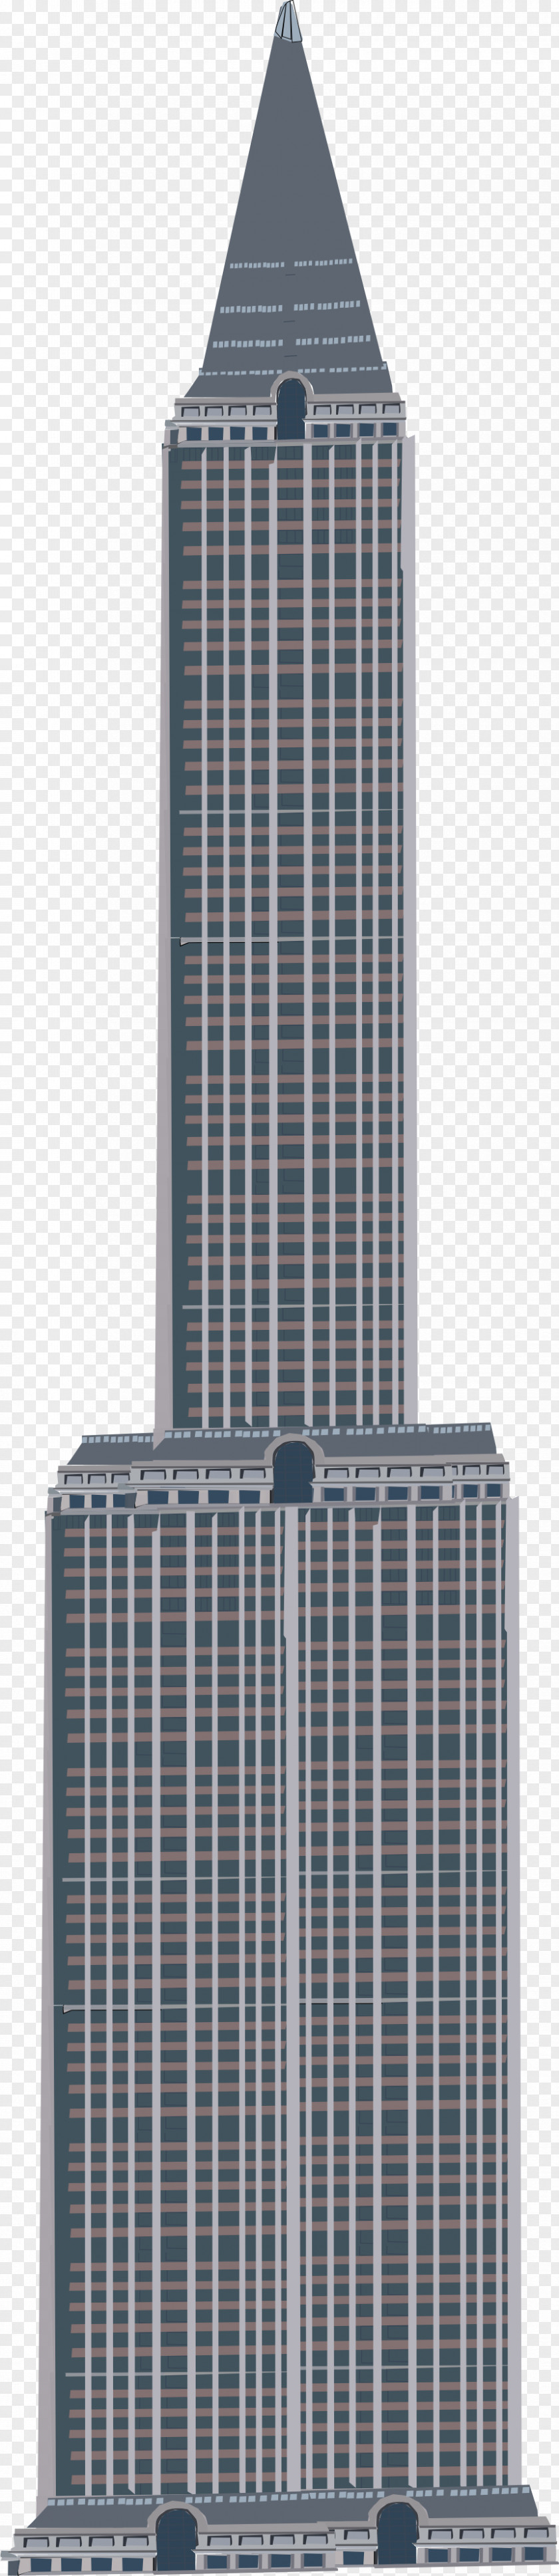 Empire State Buildin Skyscraper Facade Corporate Headquarters Building PNG